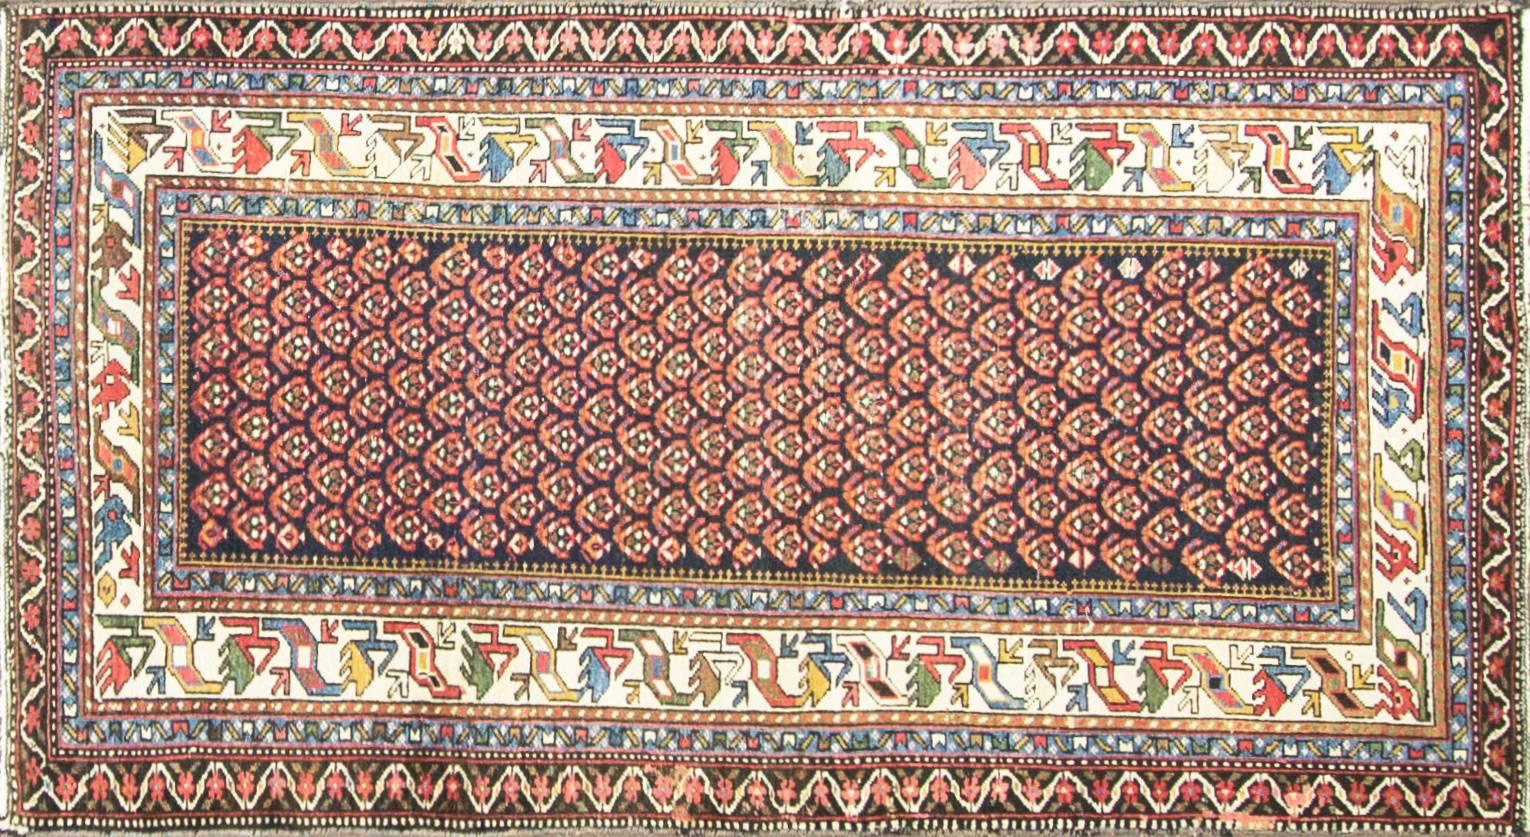 Kaukasische Teppiche werden hauptsächlich in den Dörfern und nicht in den Städten hergestellt. Die aus den Materialien der einzelnen Stammesprovinzen gefertigten Teppiche aus dem Kaukasus weisen in der Regel kühne geometrische Muster in Primärfarben